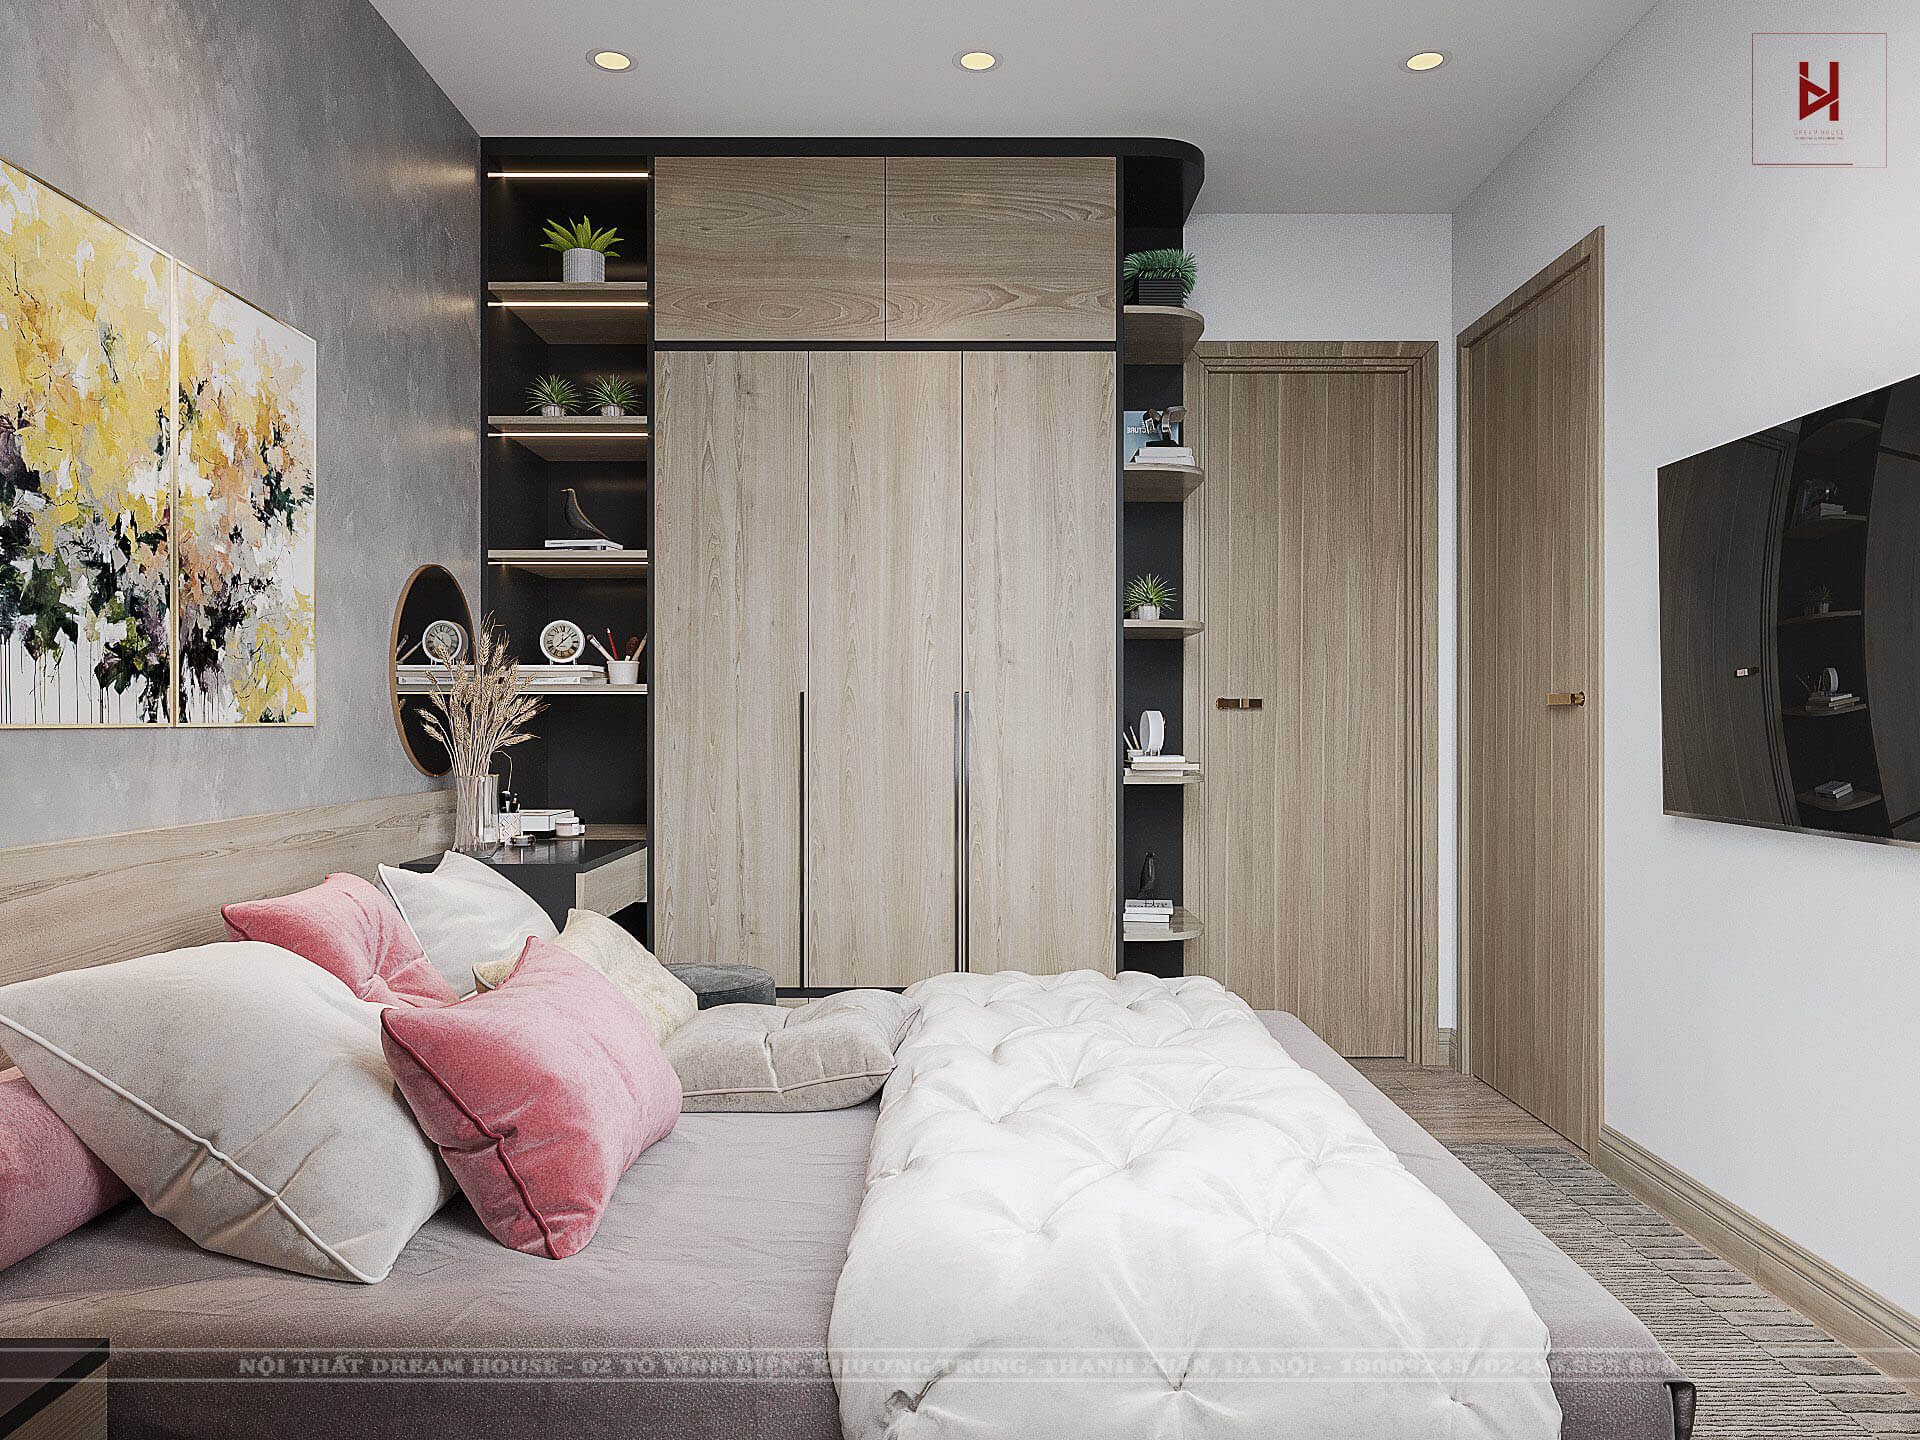 Thiết kế nội thất căn hộ tại Vinhomes Smart City sẽ khiến bạn phải trầm trồ khen ngợi. Thiết kế tinh tế và độc đáo sẽ mang lại không gian sống thoải mái và hiện đại nhất. Được trang bị đầy đủ tiện nghi hiện đại nhất, từ hệ thống giải trí đa phương tiện đến thiết bị điện tử thông minh.